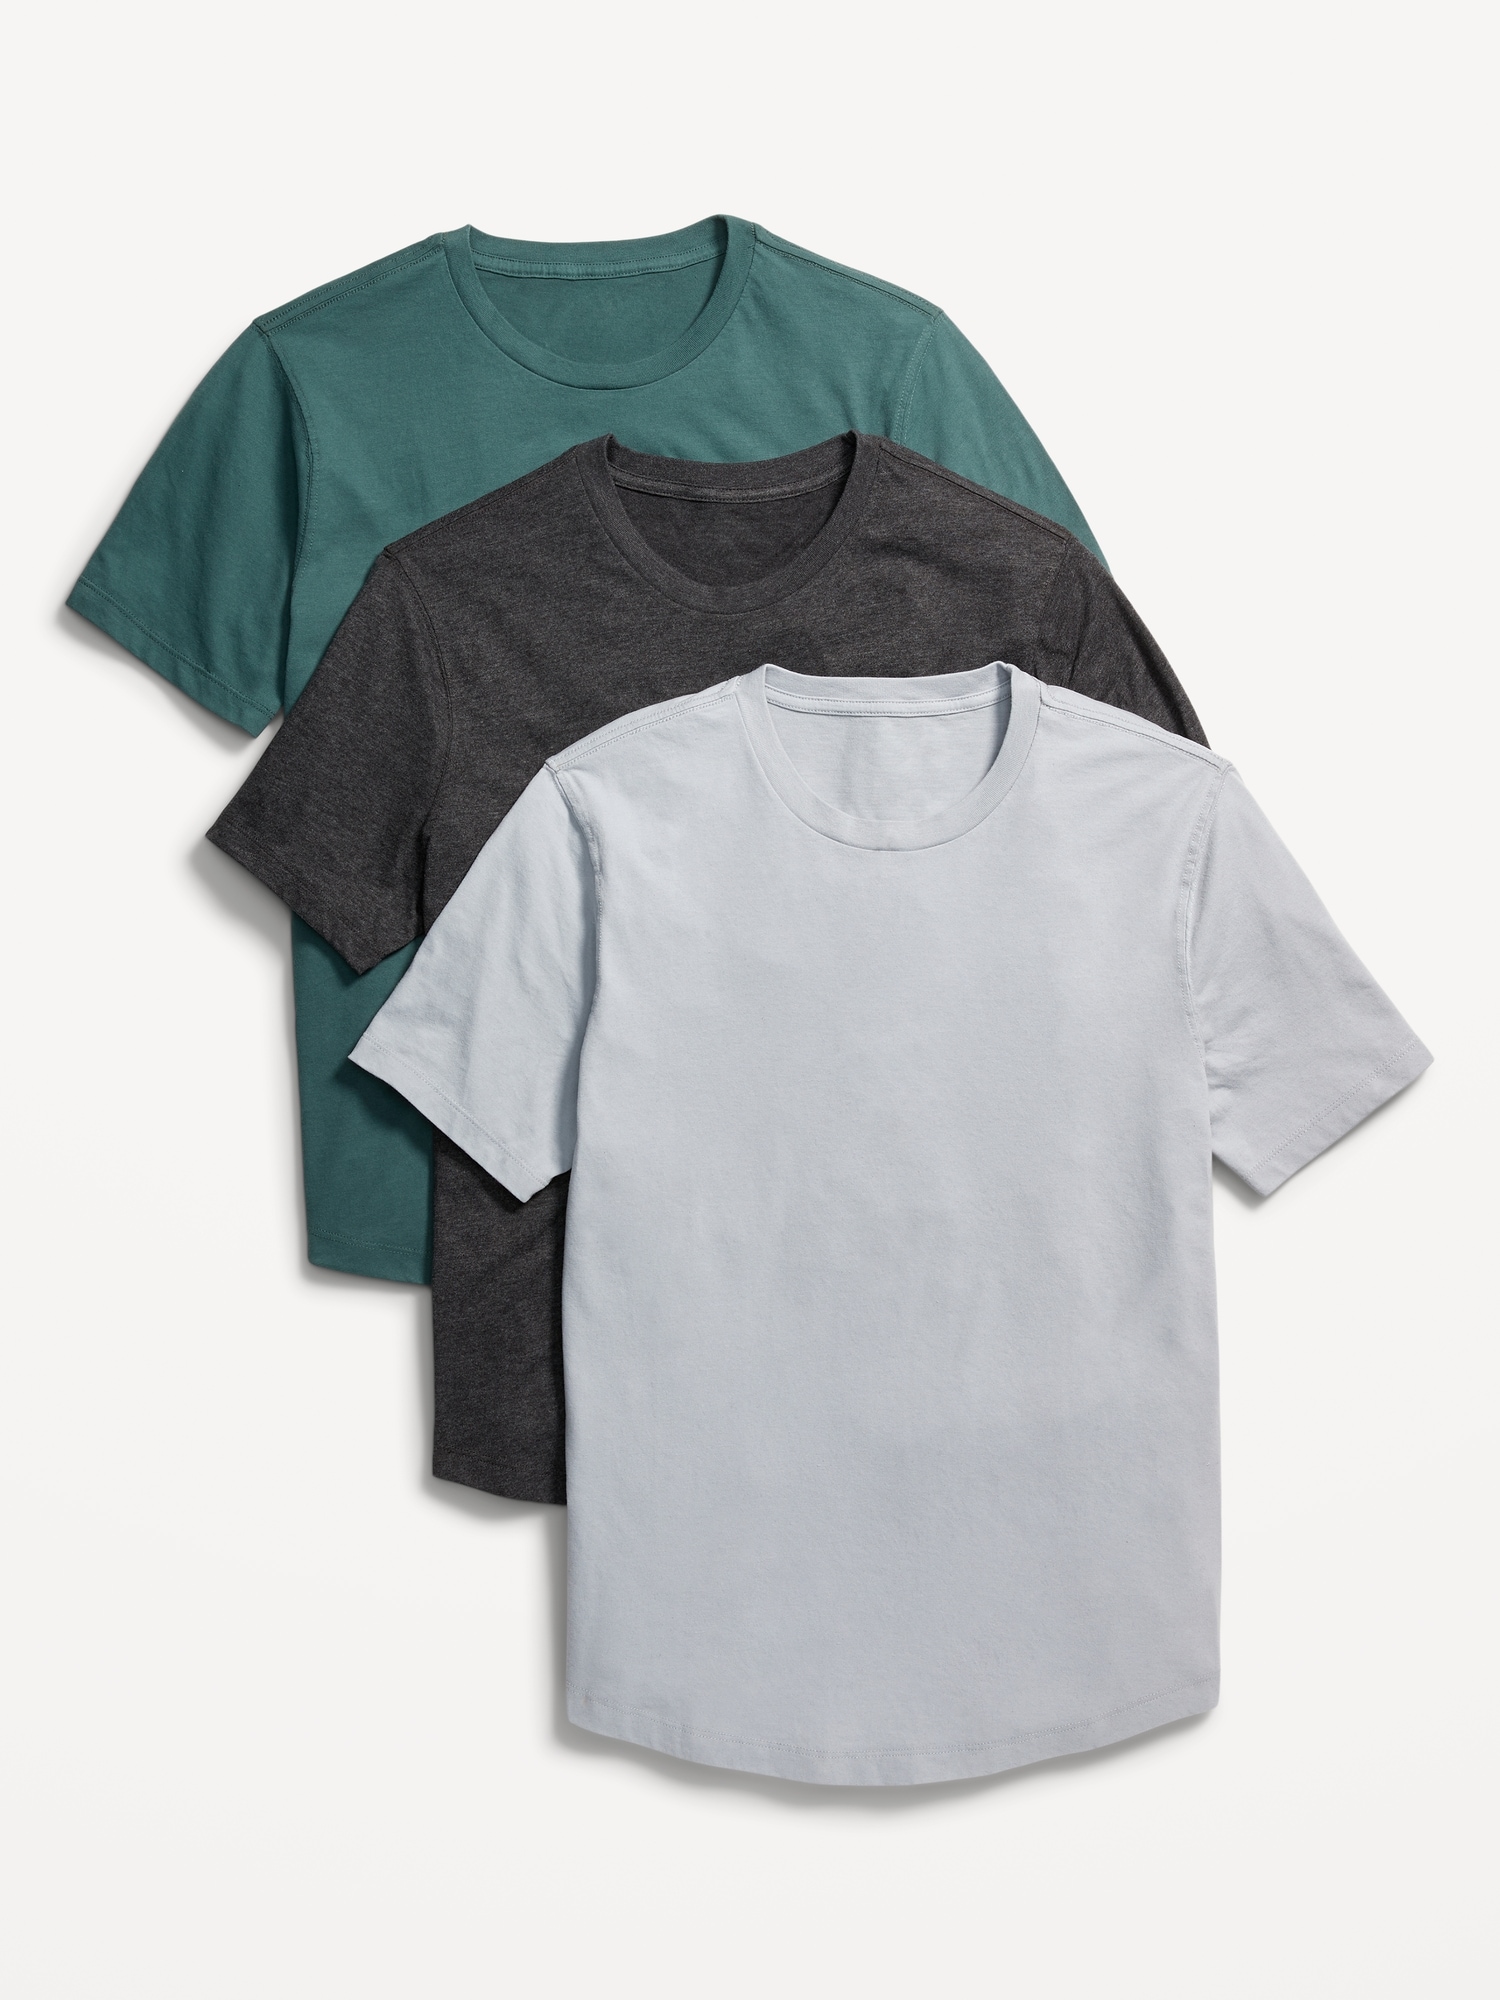 Old Navy Men's Soft-Washed Curved-Hem T-Shirt 3-Pack - - Size M